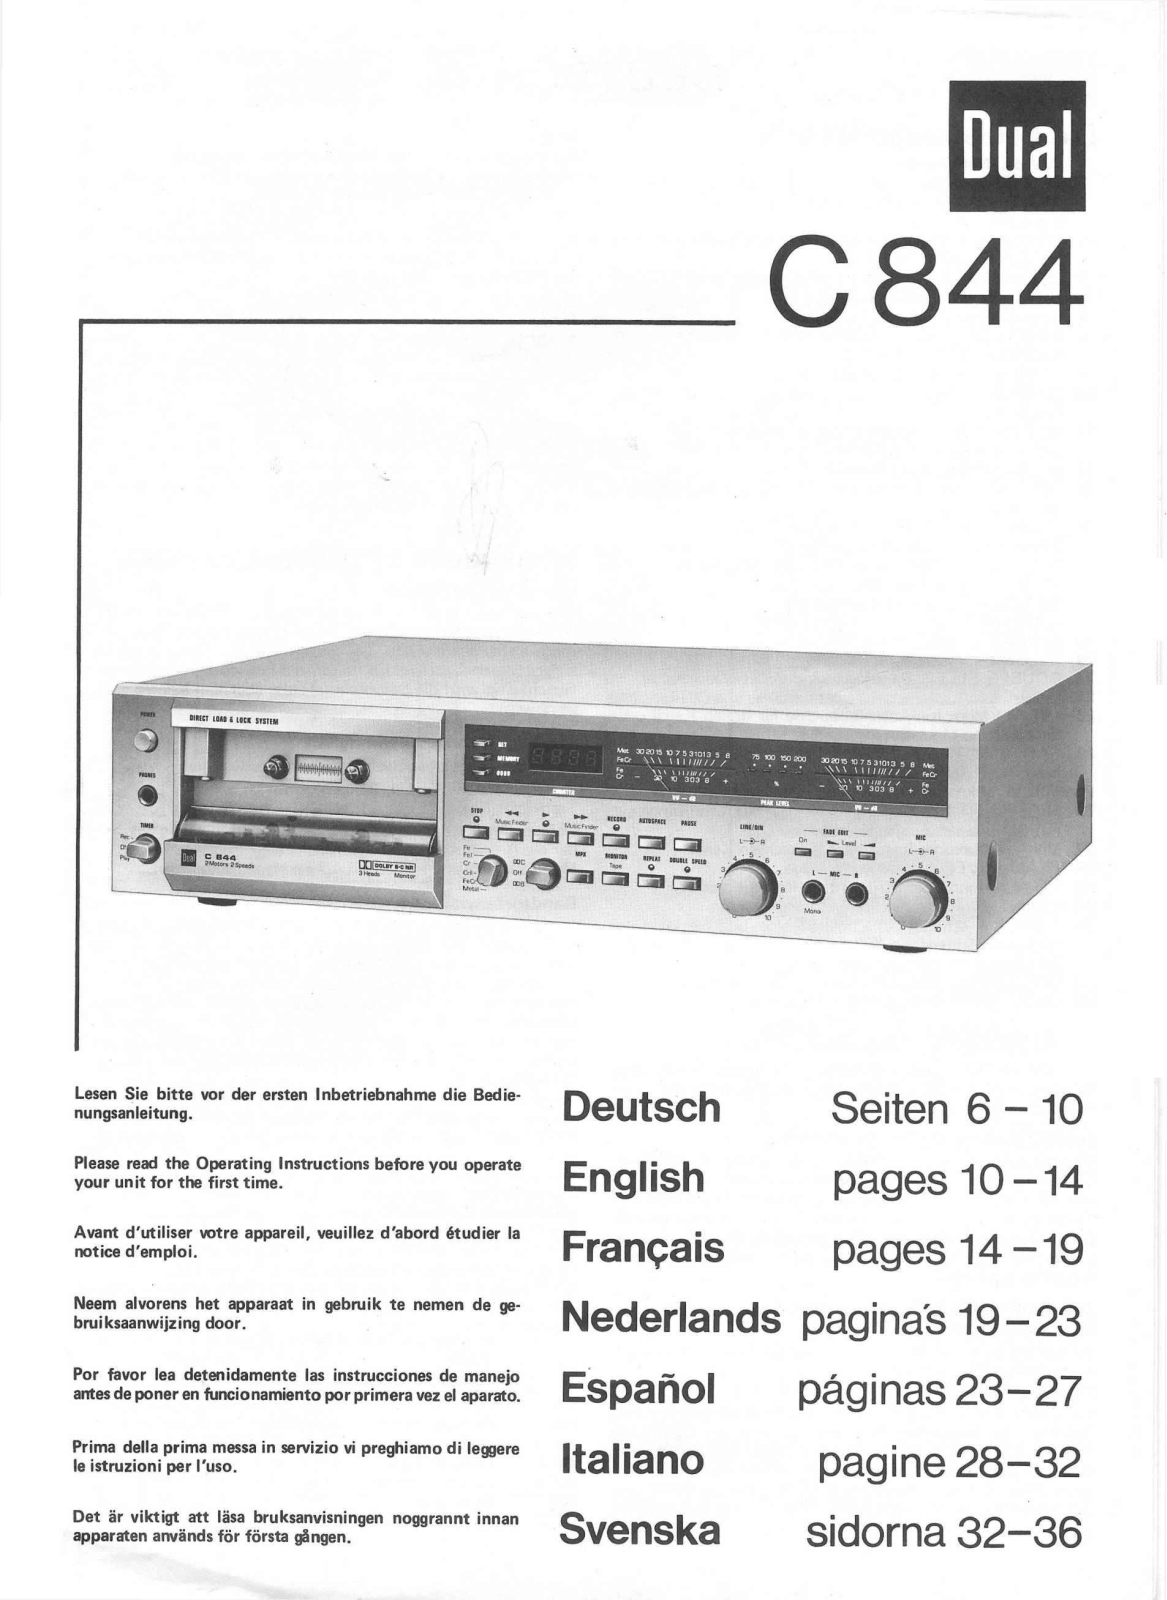 Dual C-844 Owners Manual